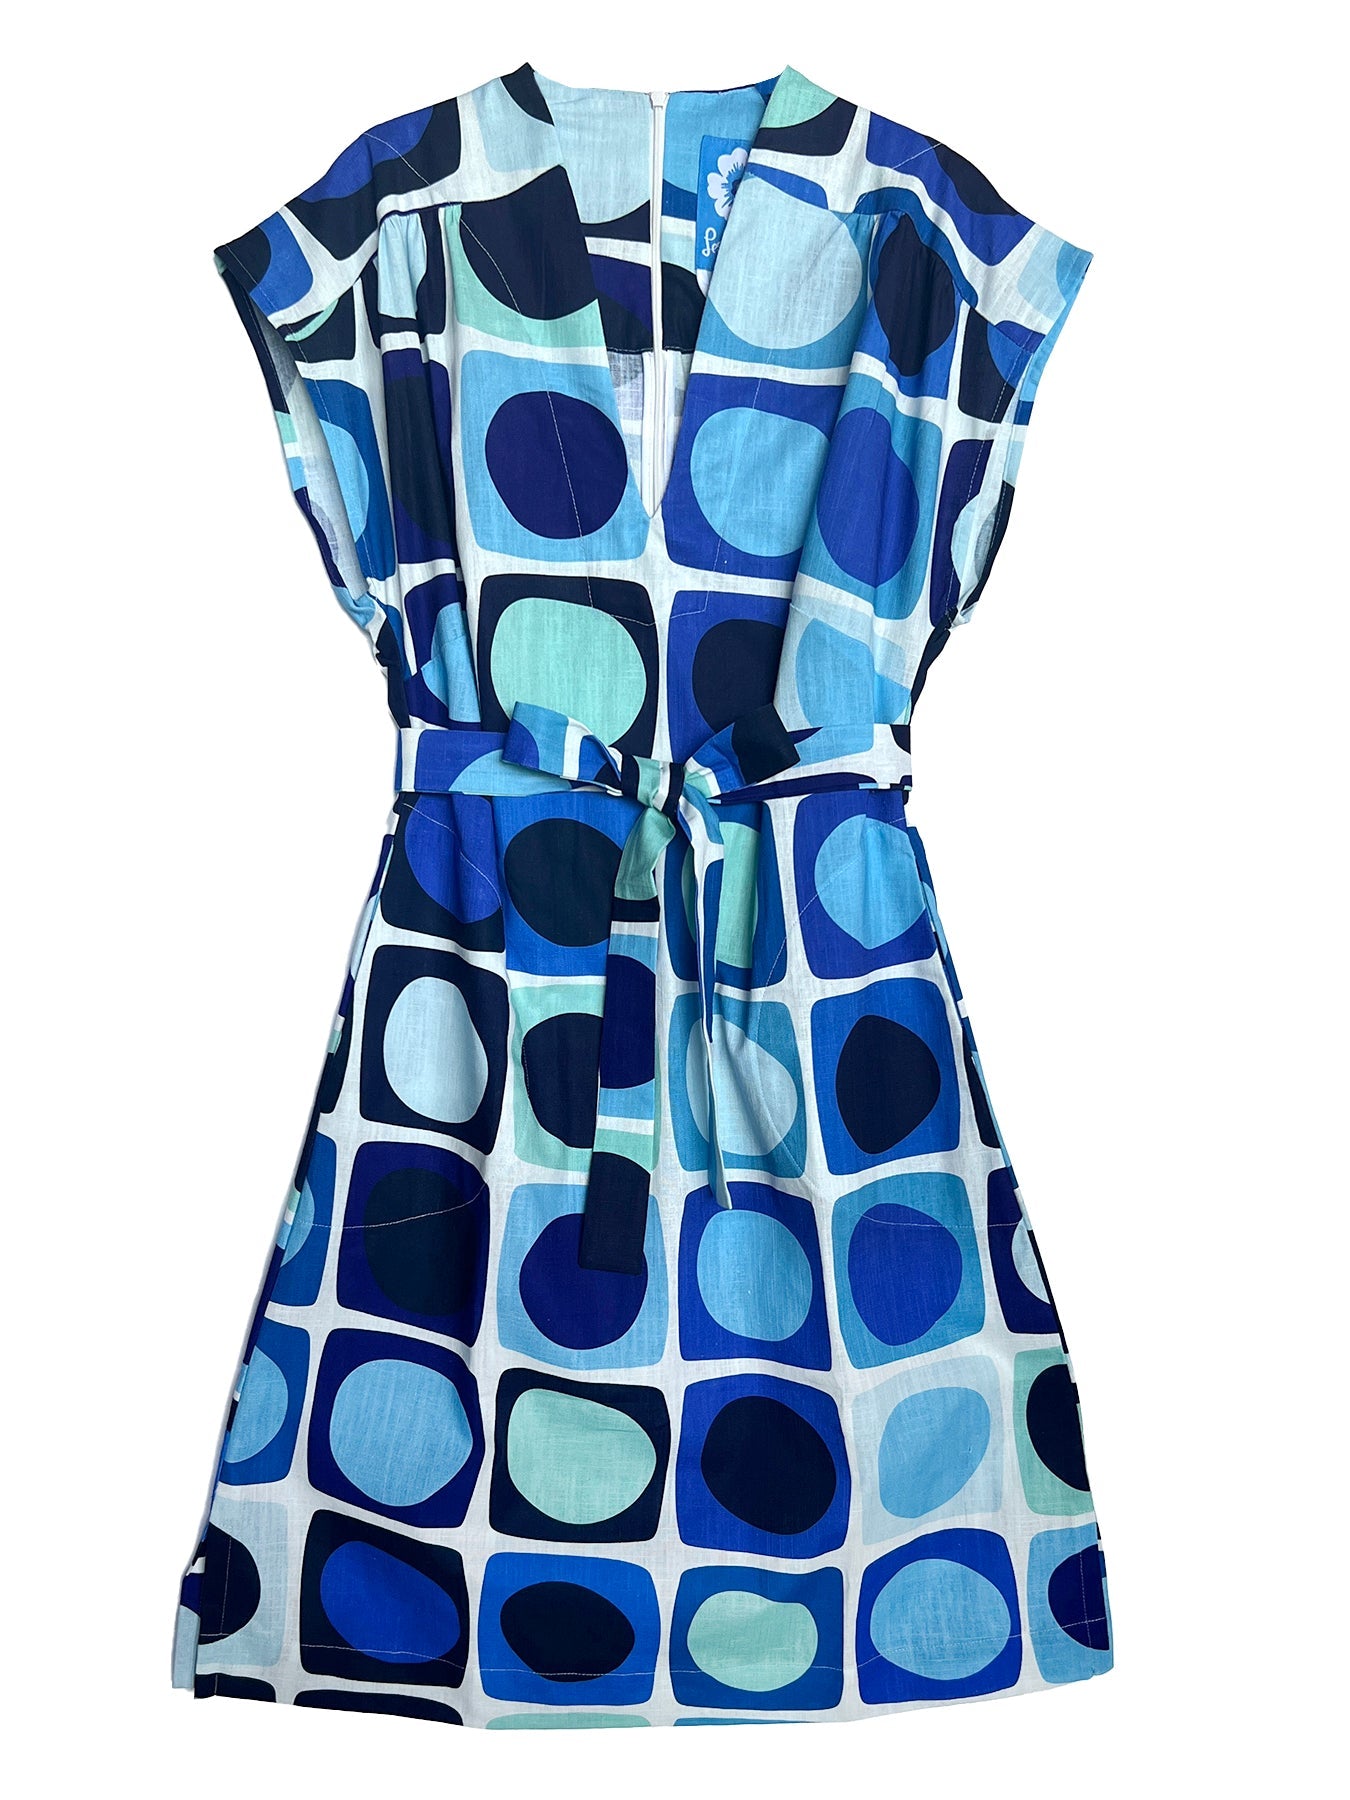 ELAINE dress Sea Glass Blue - Lesley Evers-blue dress-cotton dress-cotton slub dress